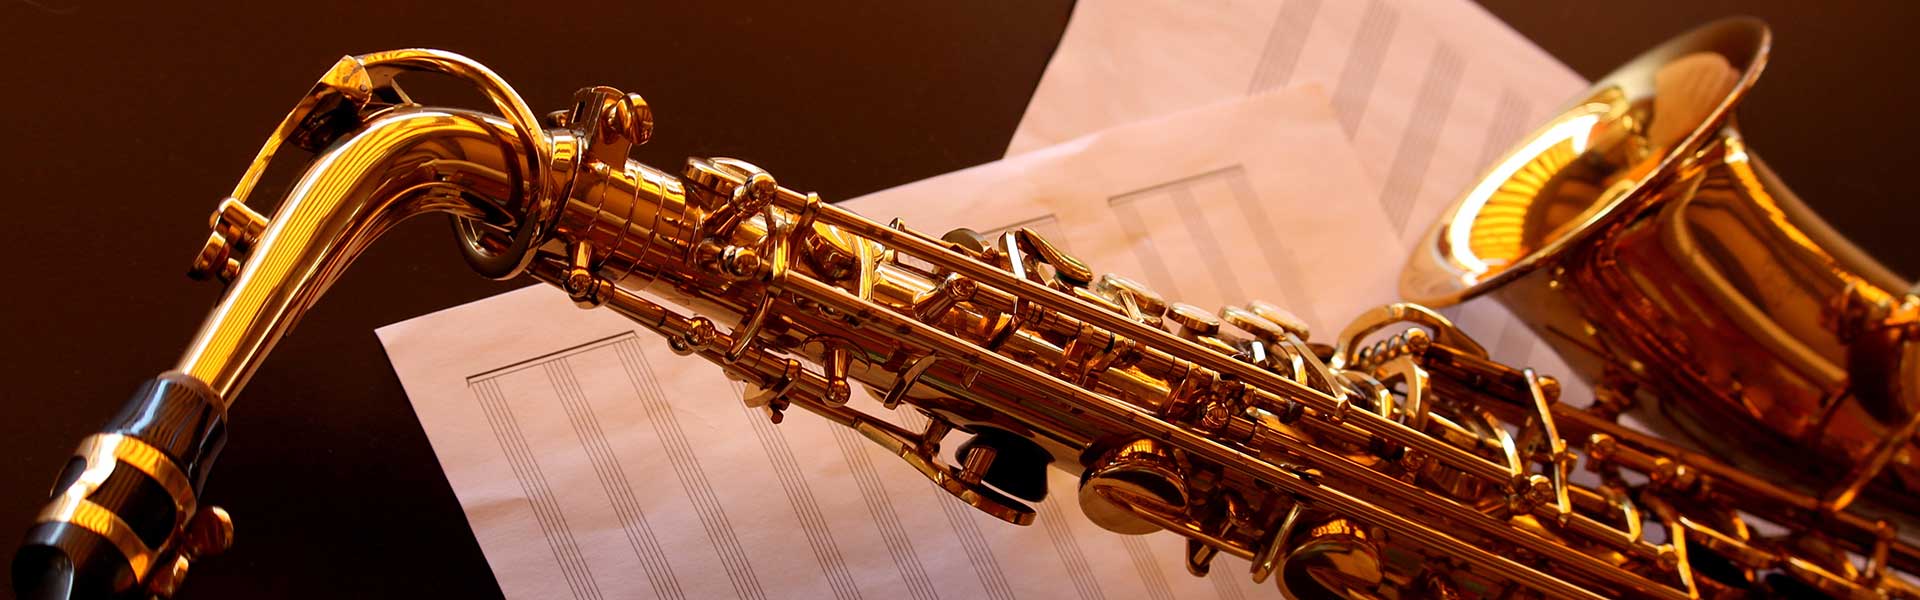 Saxophon Schule